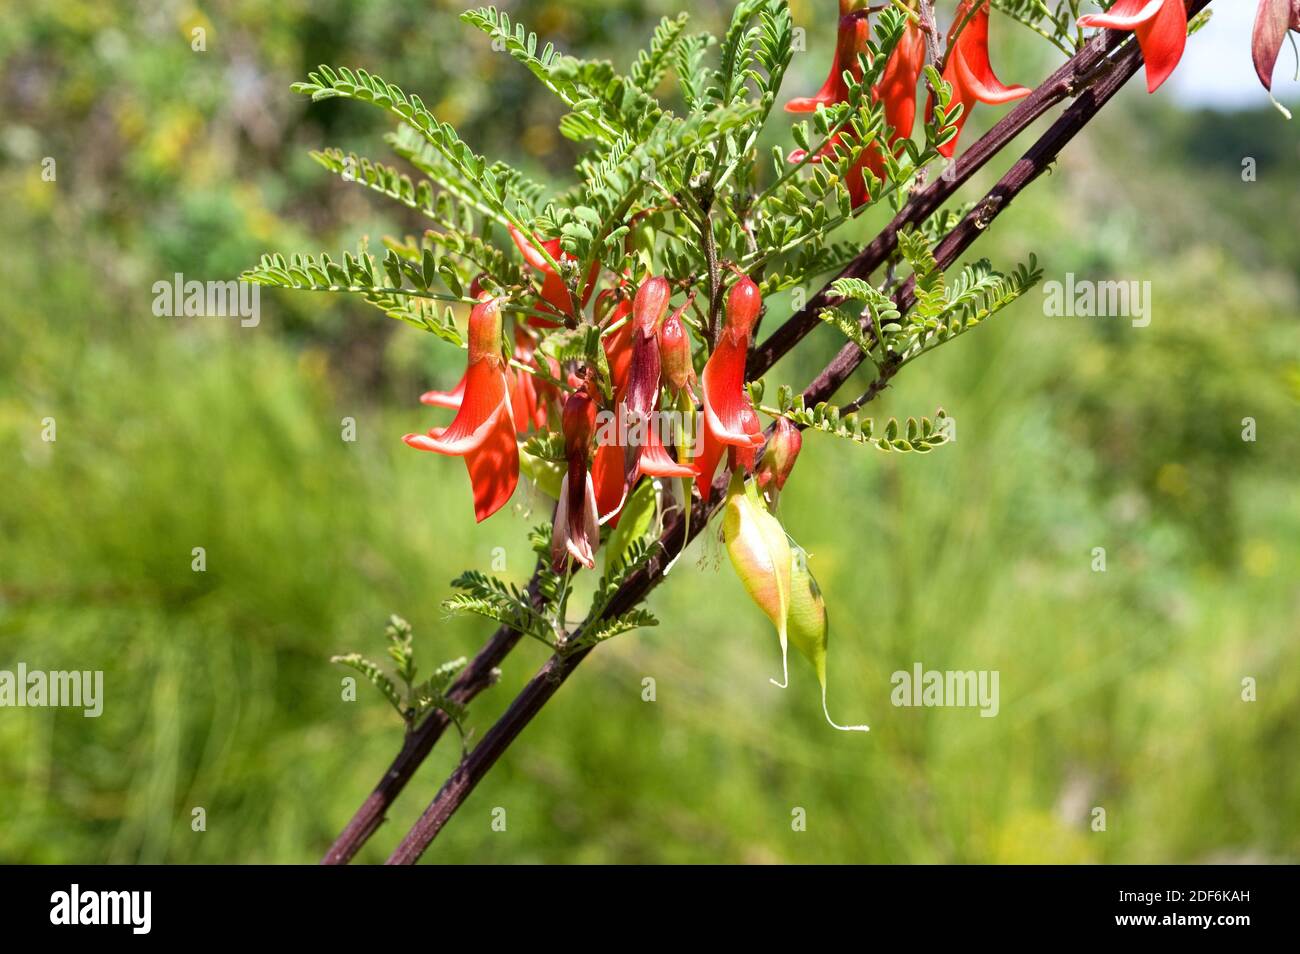 Ballon pisello o cancro Bush (Lessertia frutescens o Sutherlandia frutescens) è un arbusto nativo del Sud Africa. Fiori e frutta dettaglio. Foto Stock